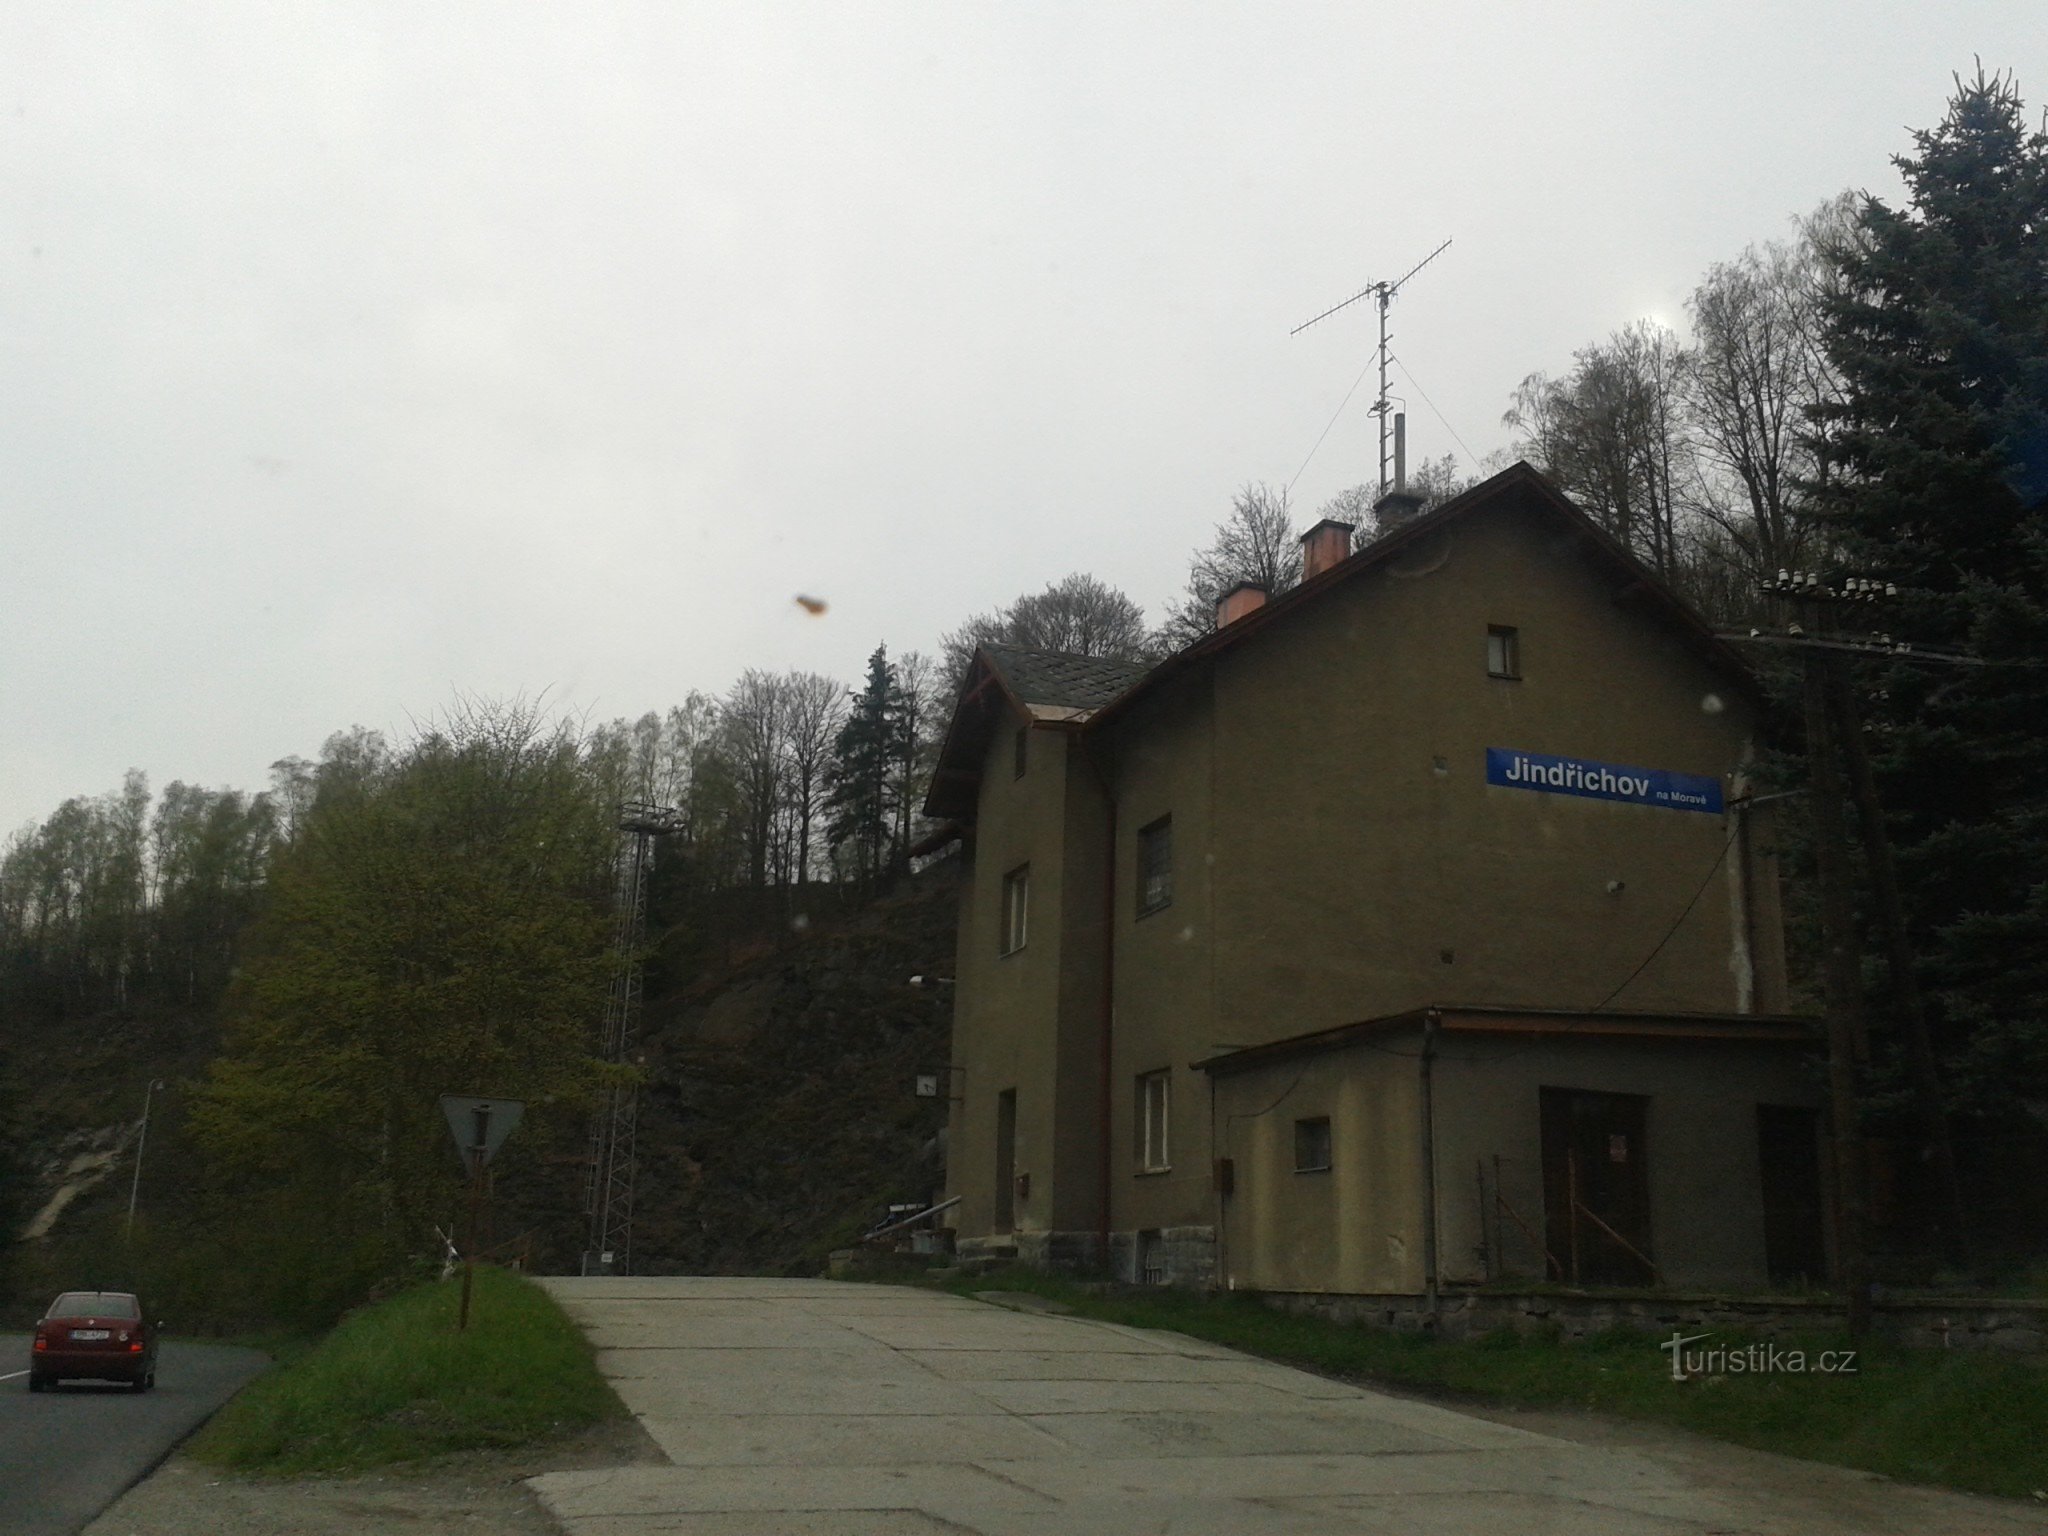 Jindřichov in Mähren - ehemalige Papiermühle und Bahnhof, wo die Zeit stehen geblieben ist, Kreis Šumperk